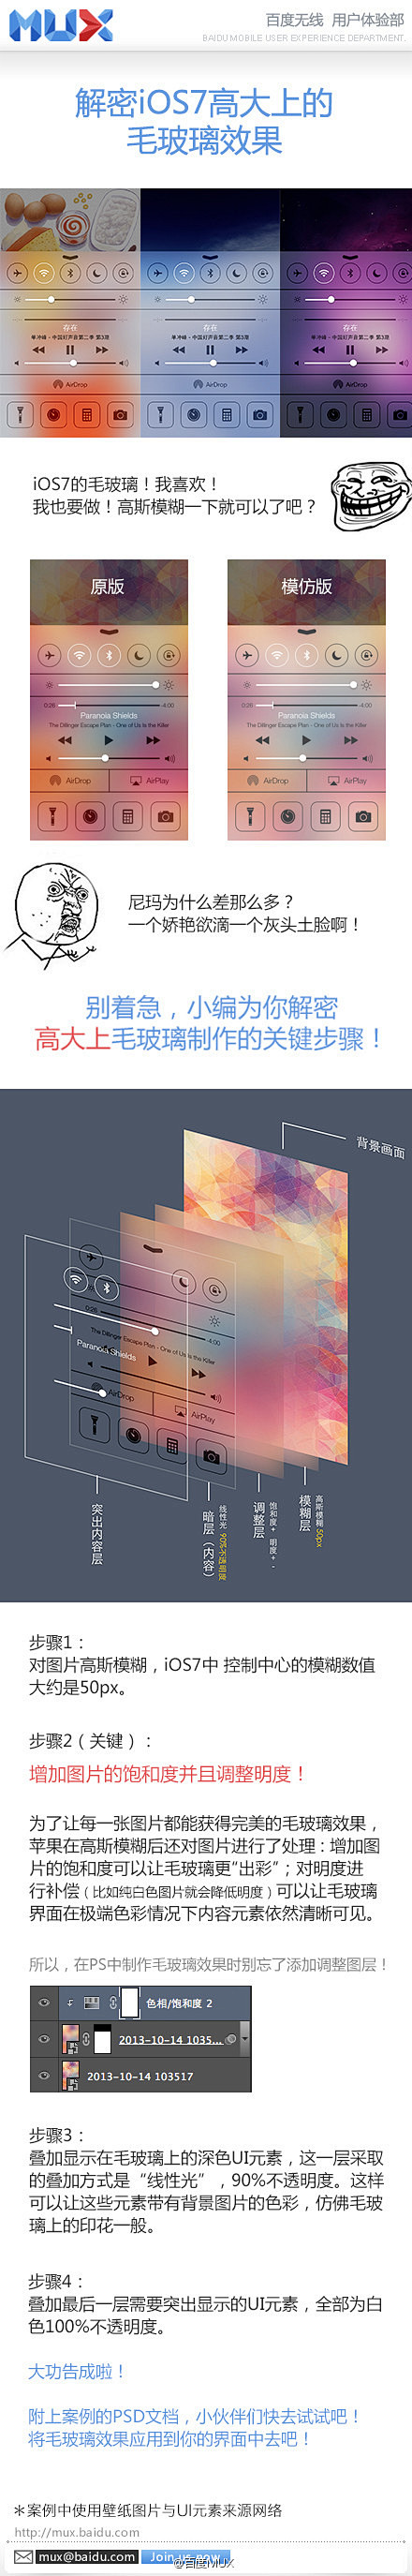 iOS7高大上的毛玻璃效果